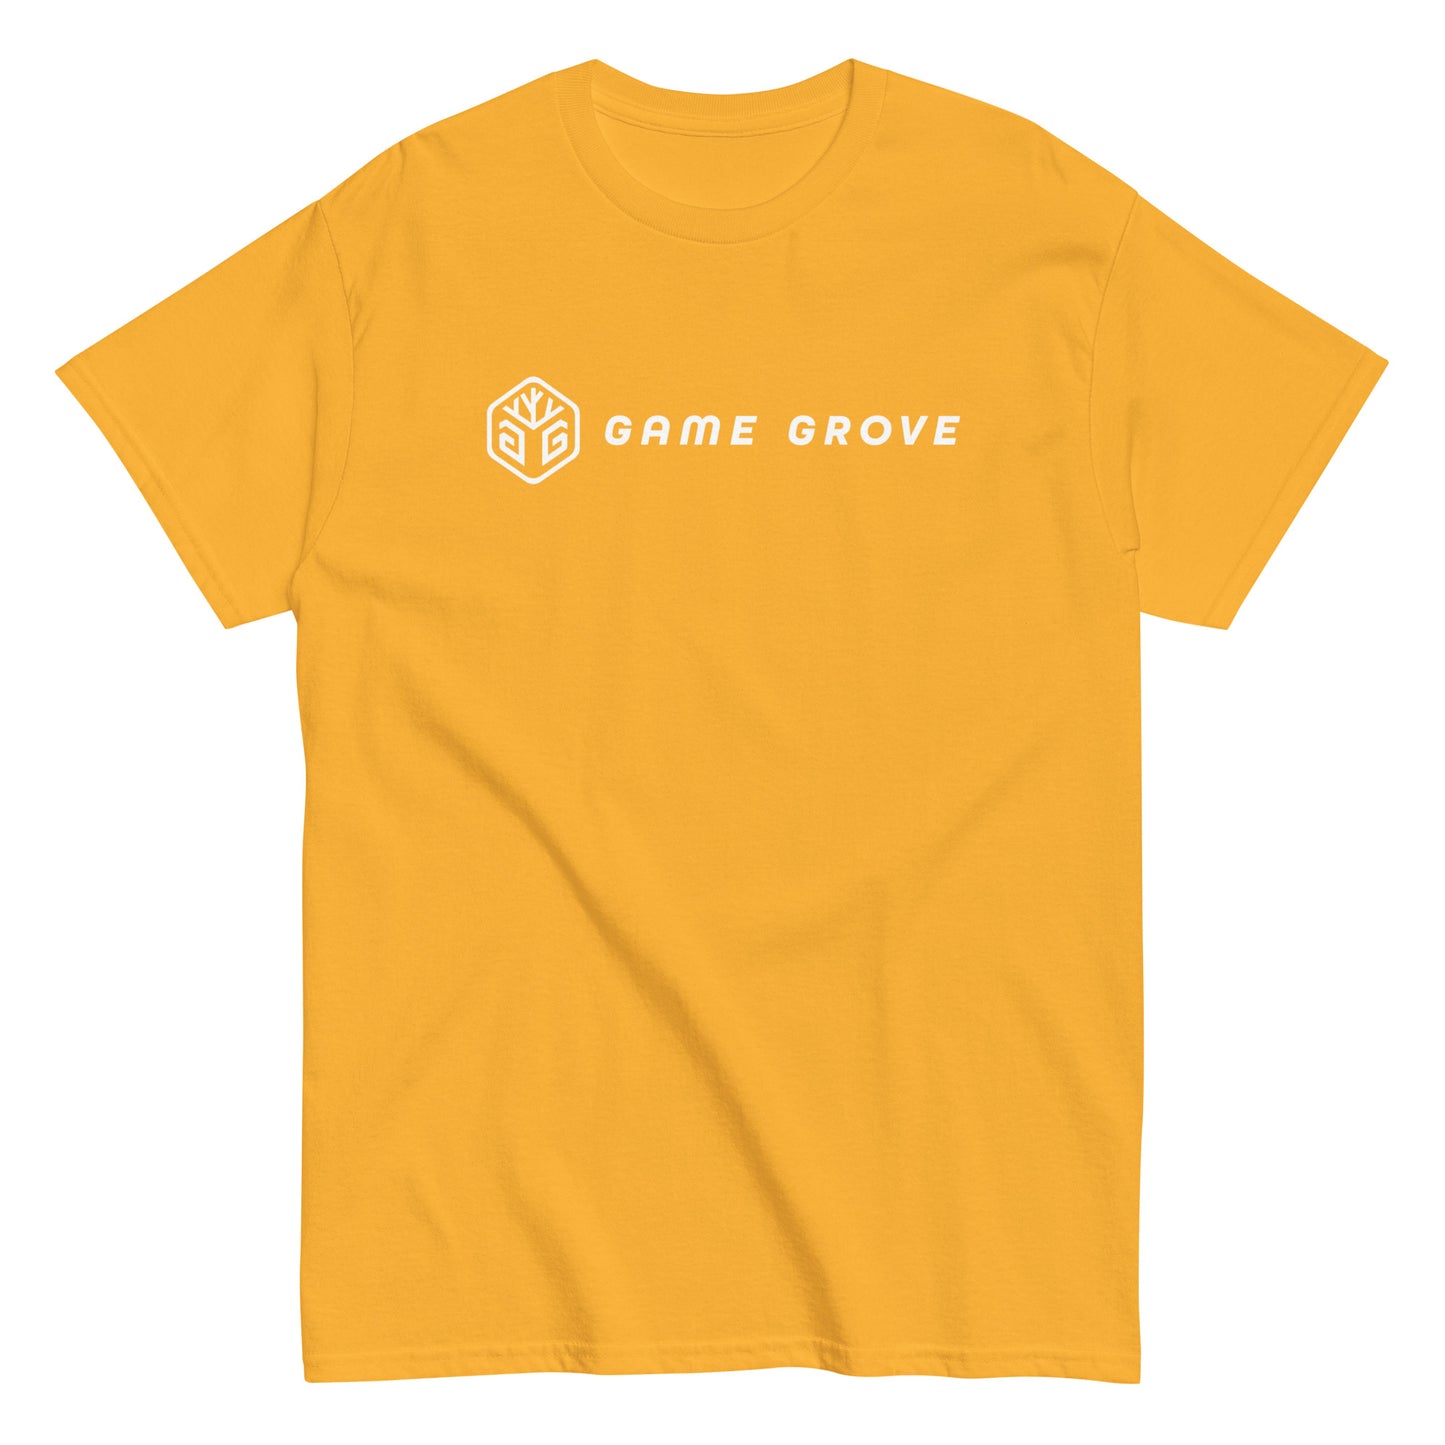 Game Grove - Classic tee